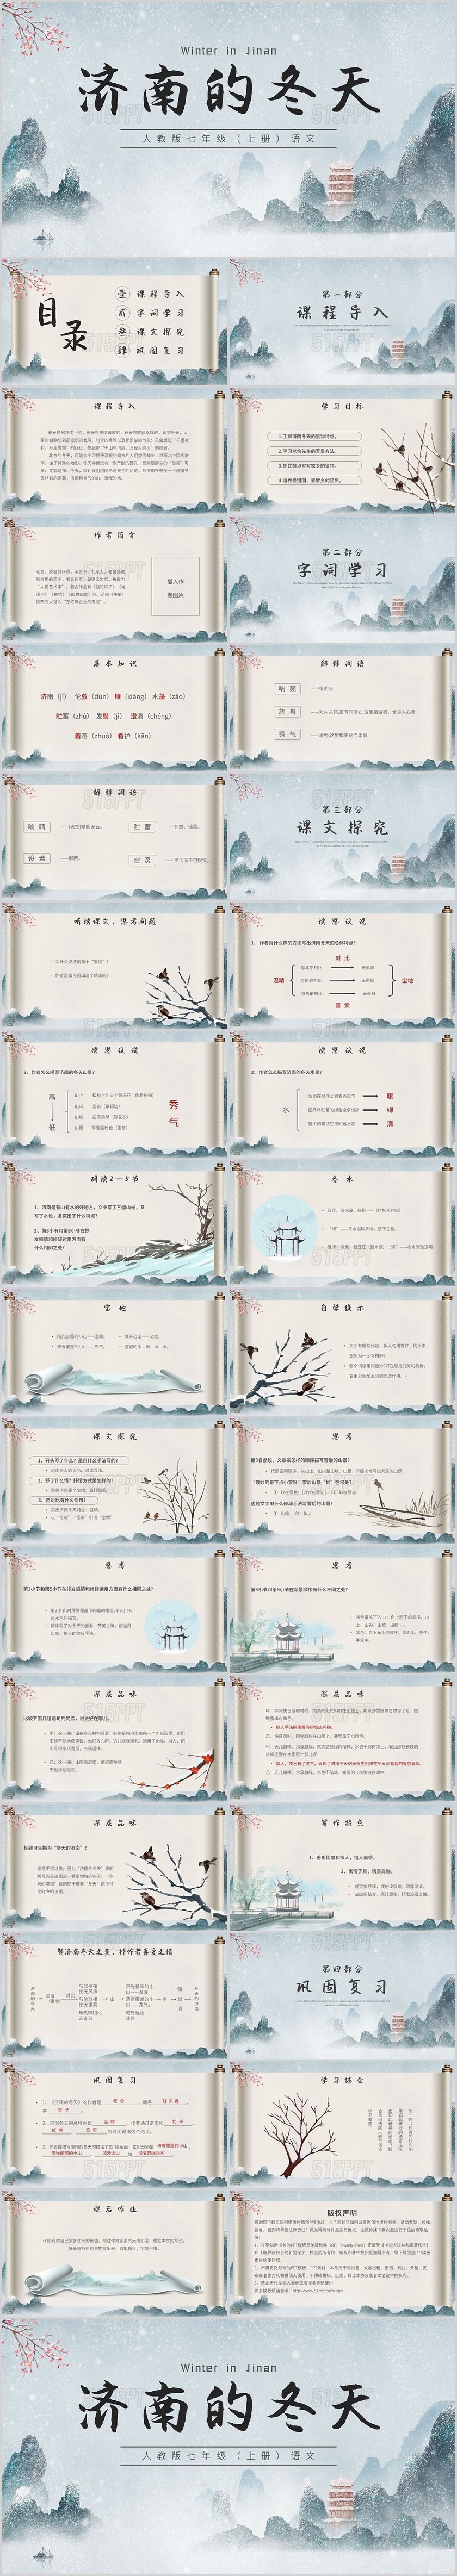 灰色简约中国风山水墨画济南的冬天主题PPT模板